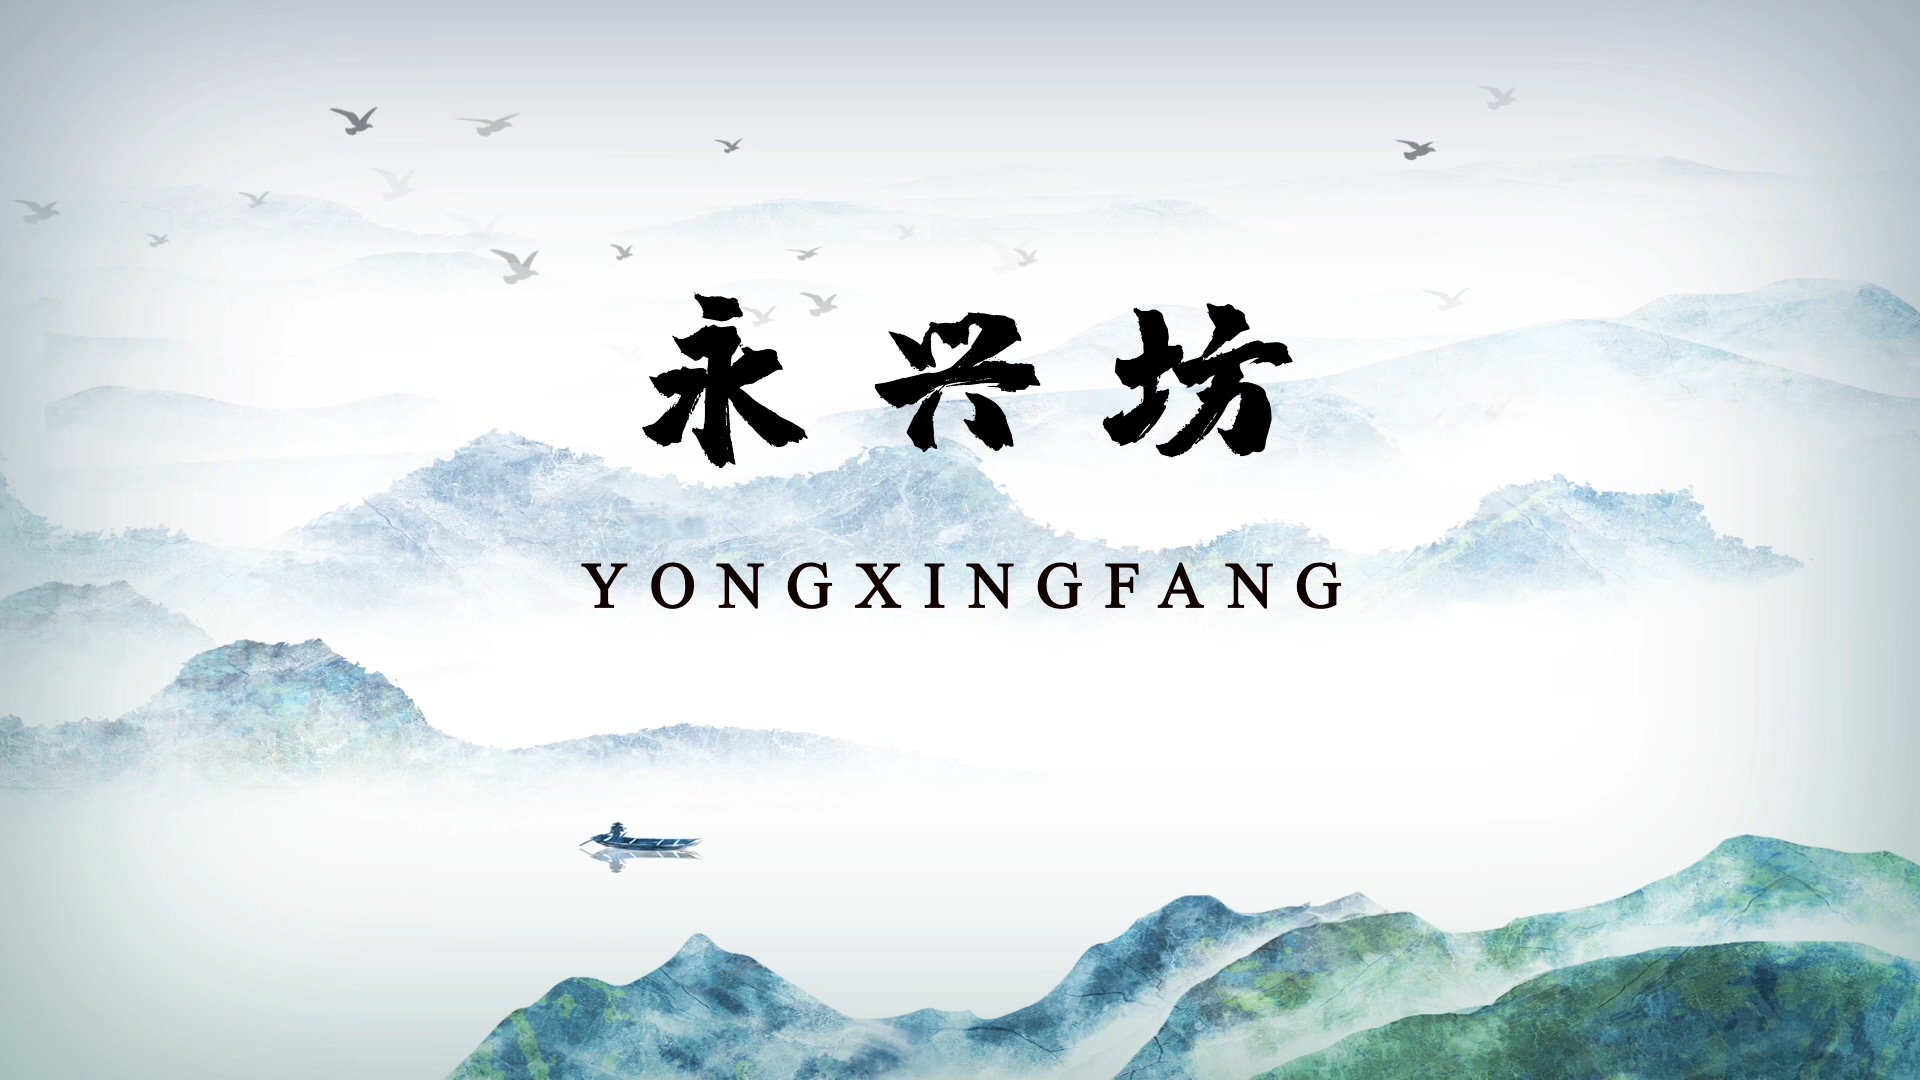 Yong Xing Fang